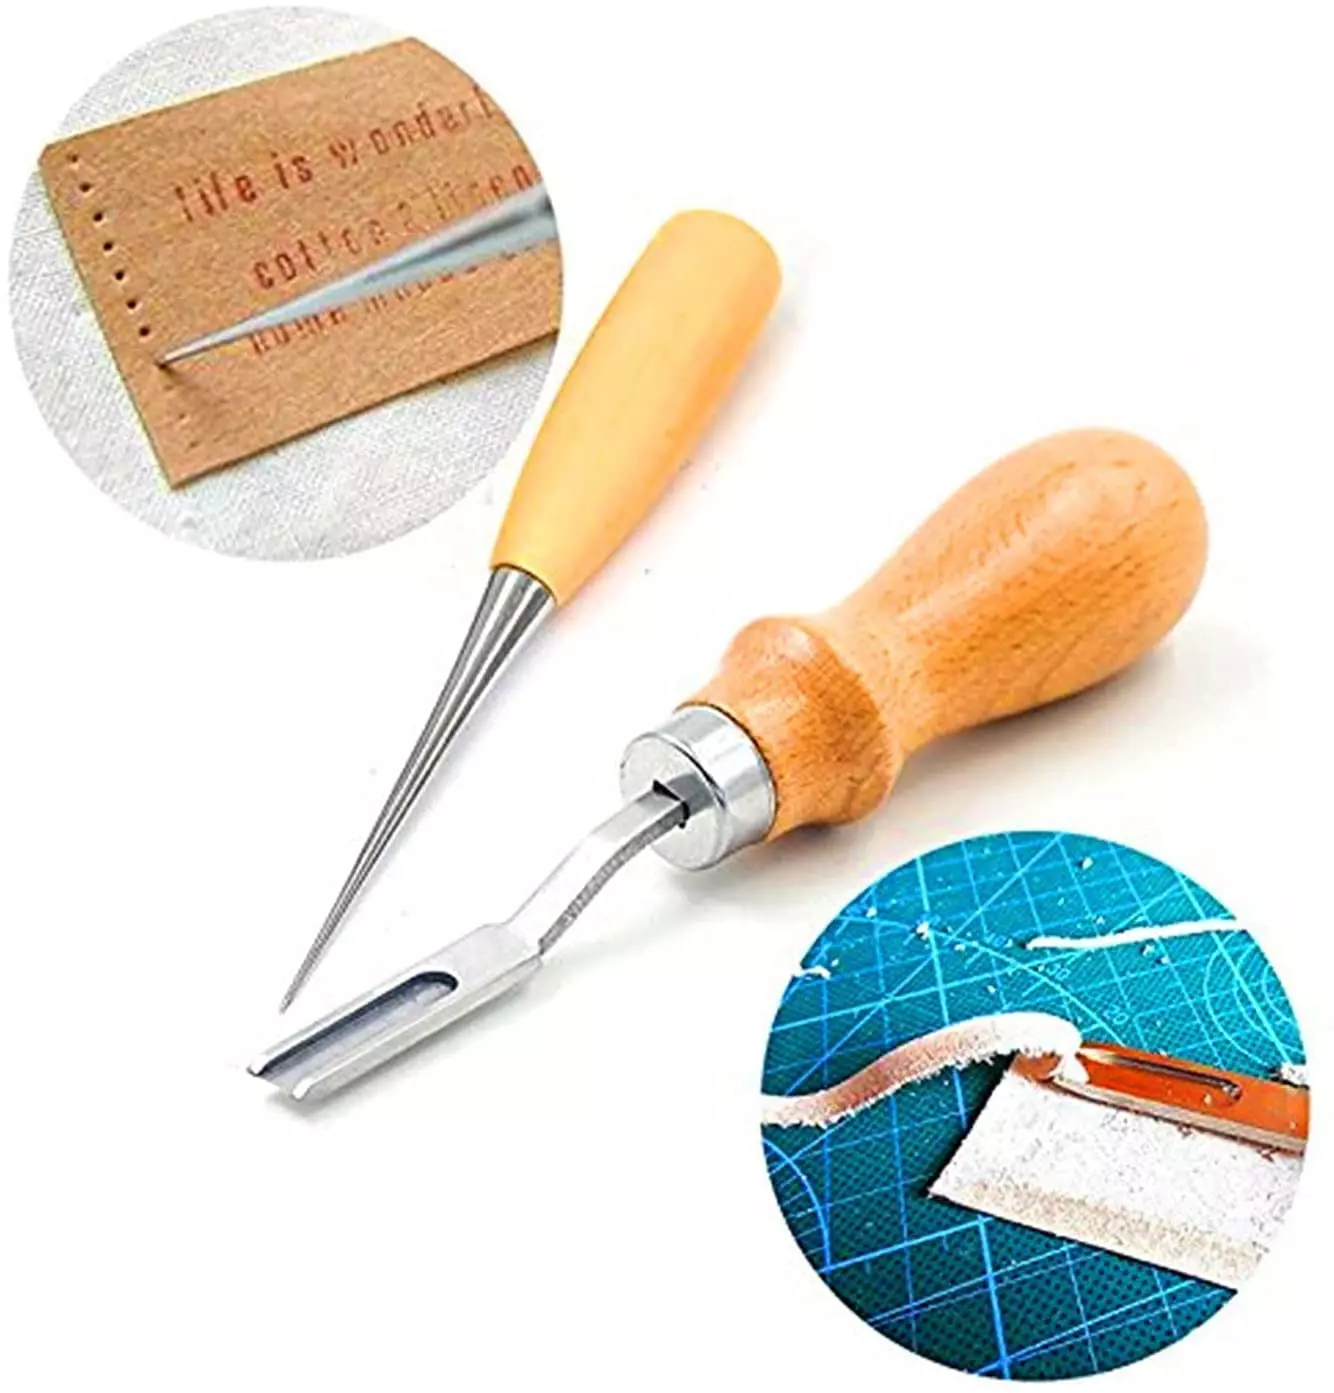 Premium 18-Piece Leather Craft Tools Kit - Stitching, Stamping, Saddle  Making